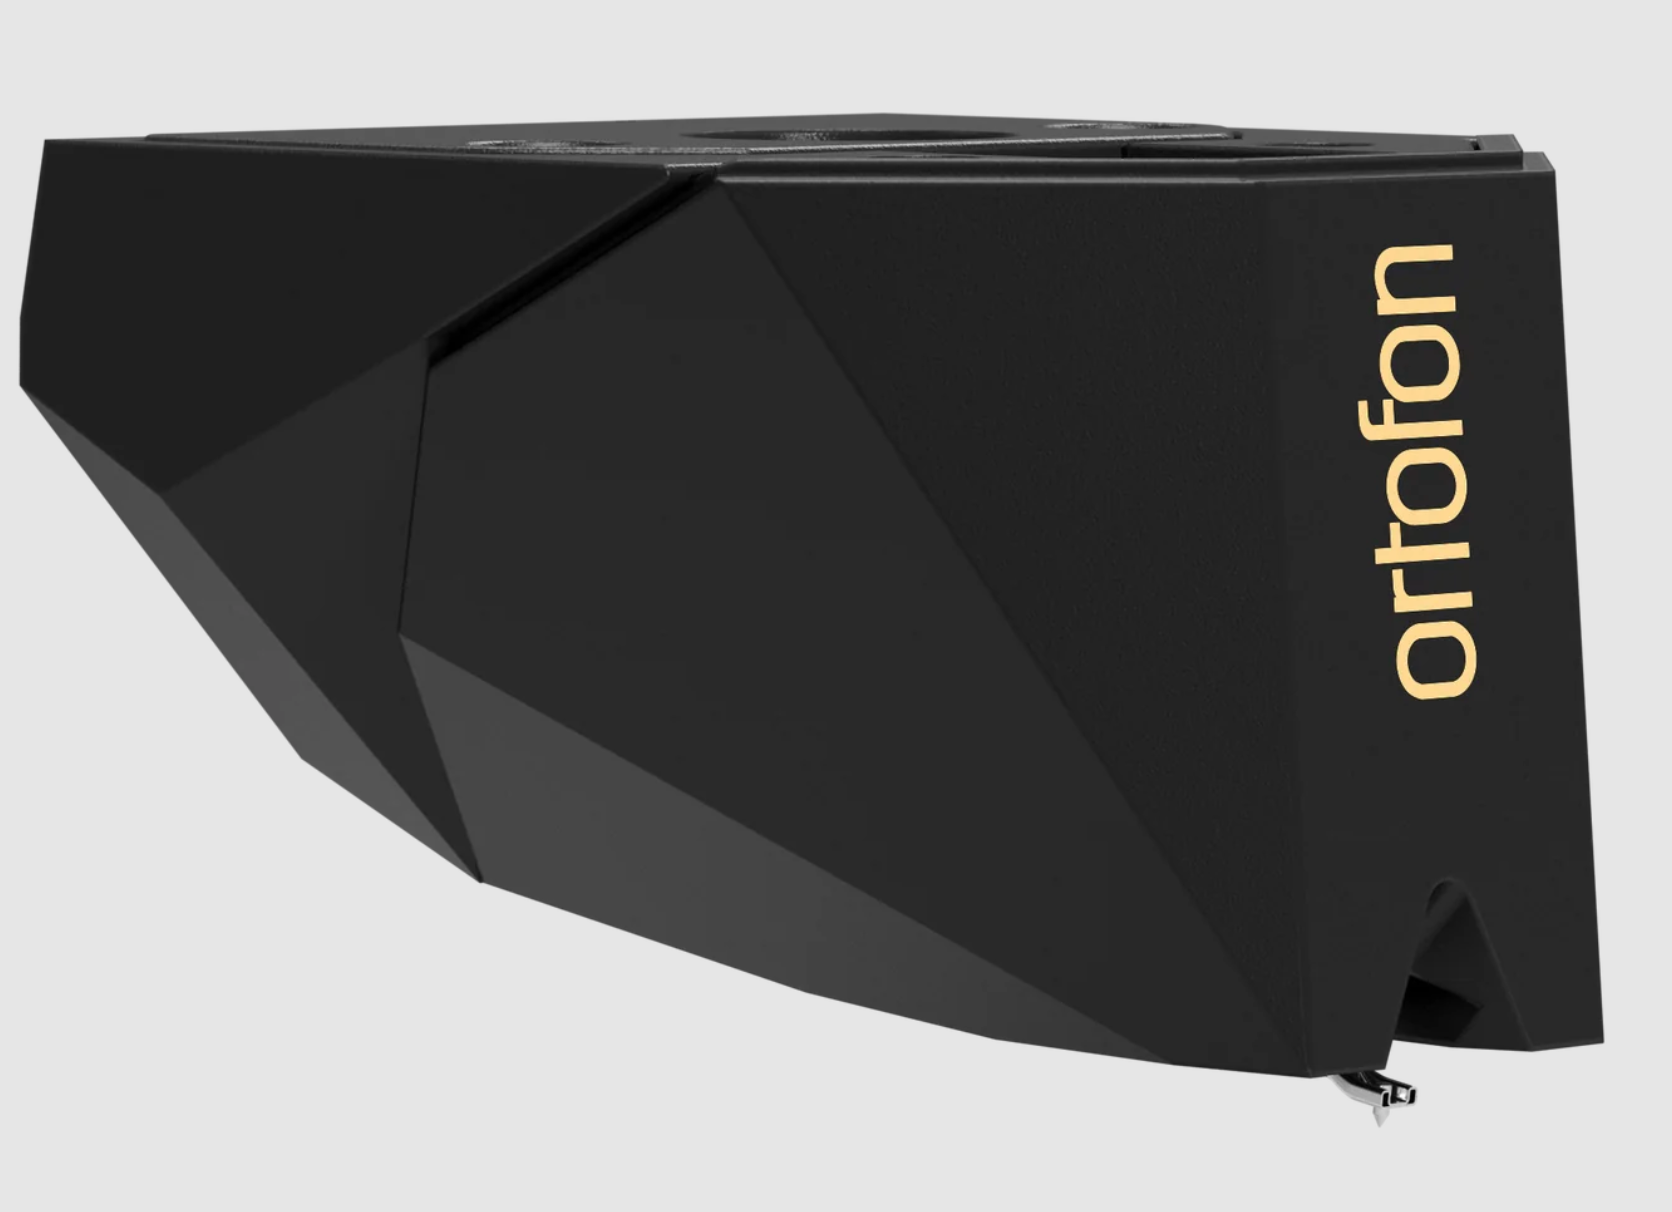 Ortofon 2MR Black LVB 250 (suits Rega turntables) Cartridge - profile